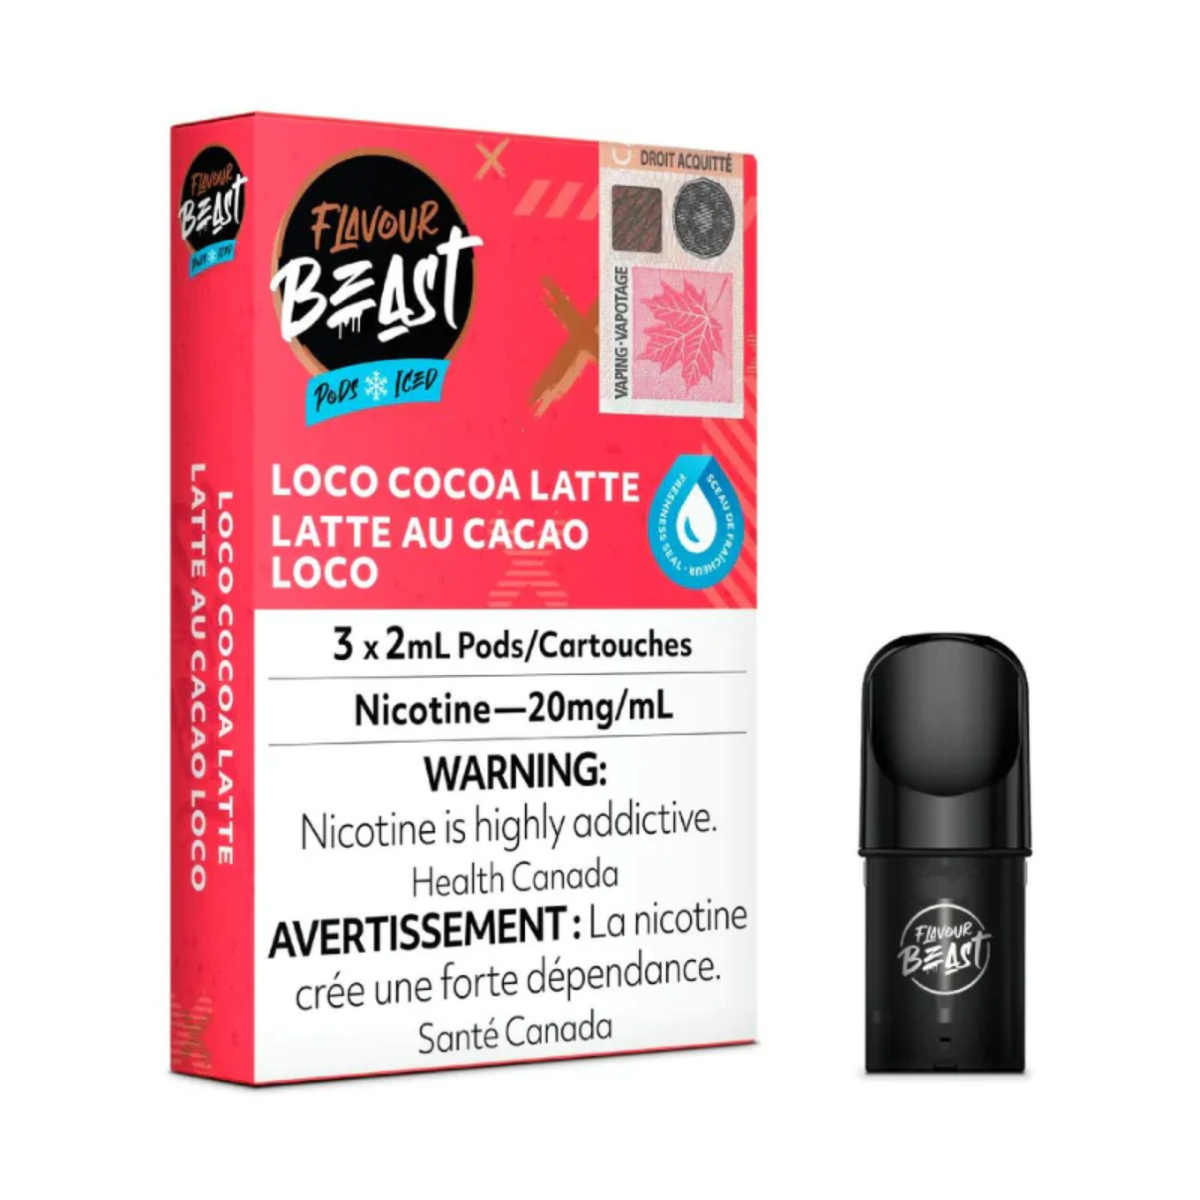 Flavour Beast Pods - Loco Cocoa Latte